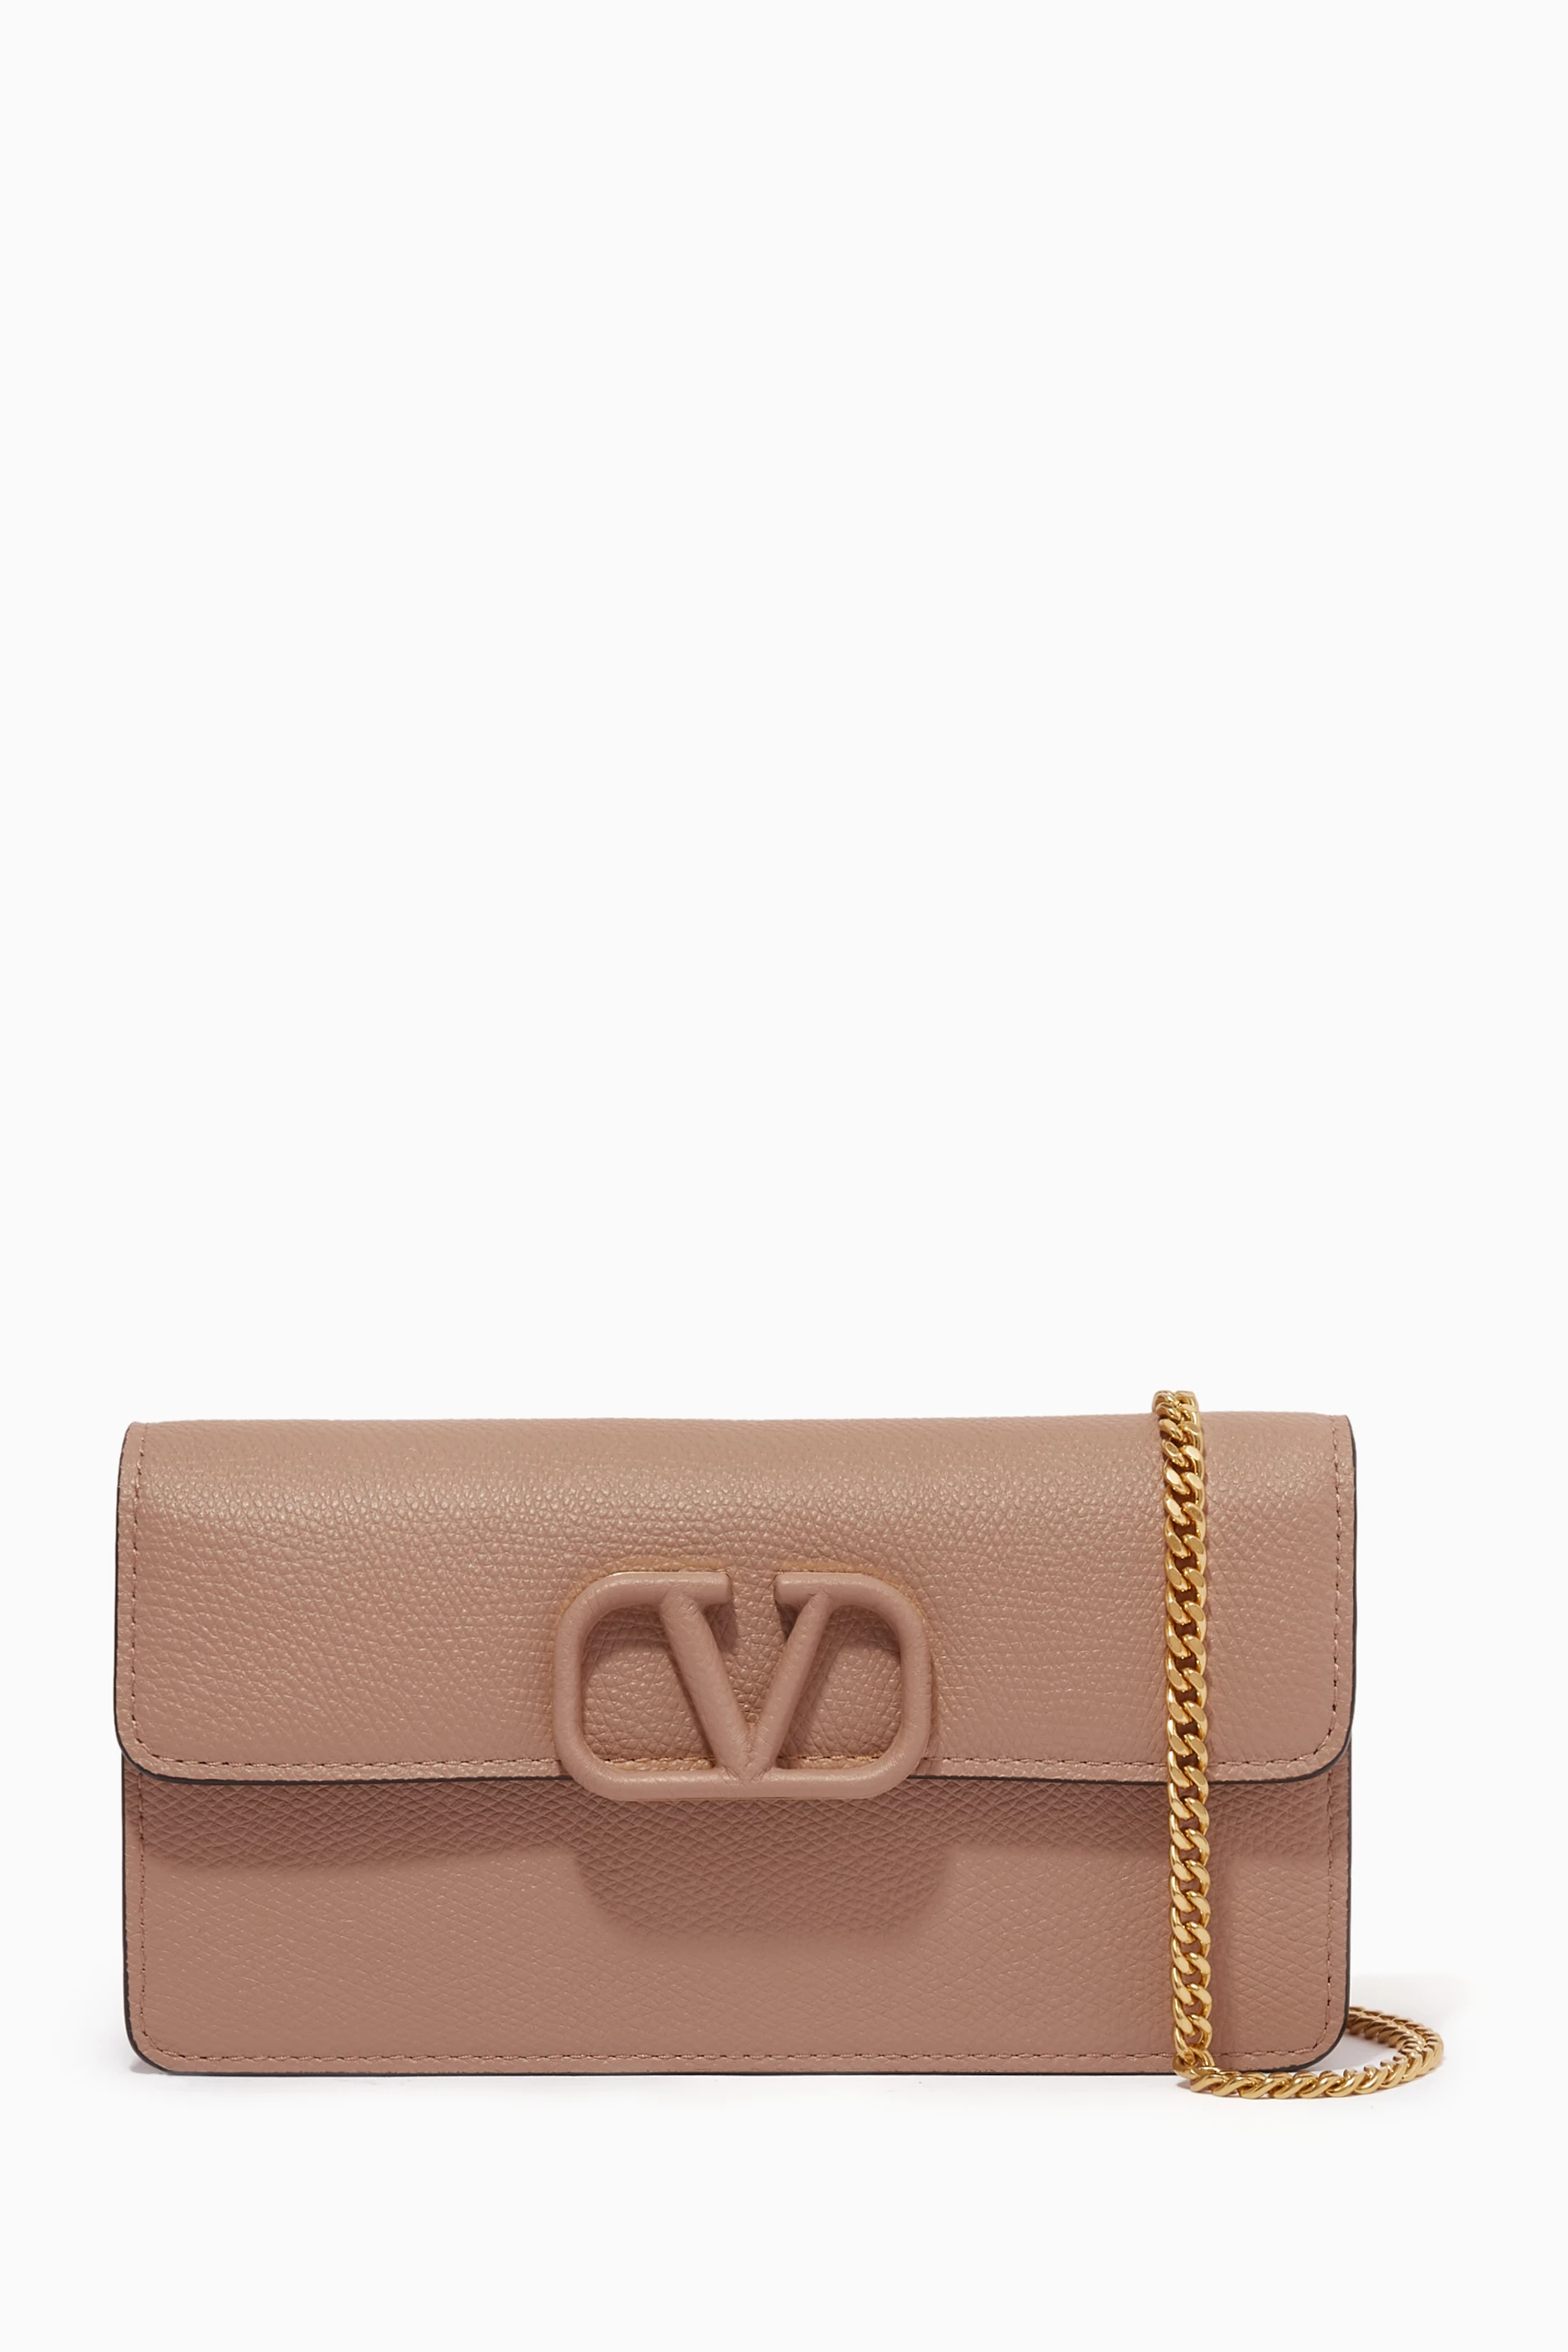 Valentino Garavani VSling Wallet on Chain Bag in Bianco Ottico